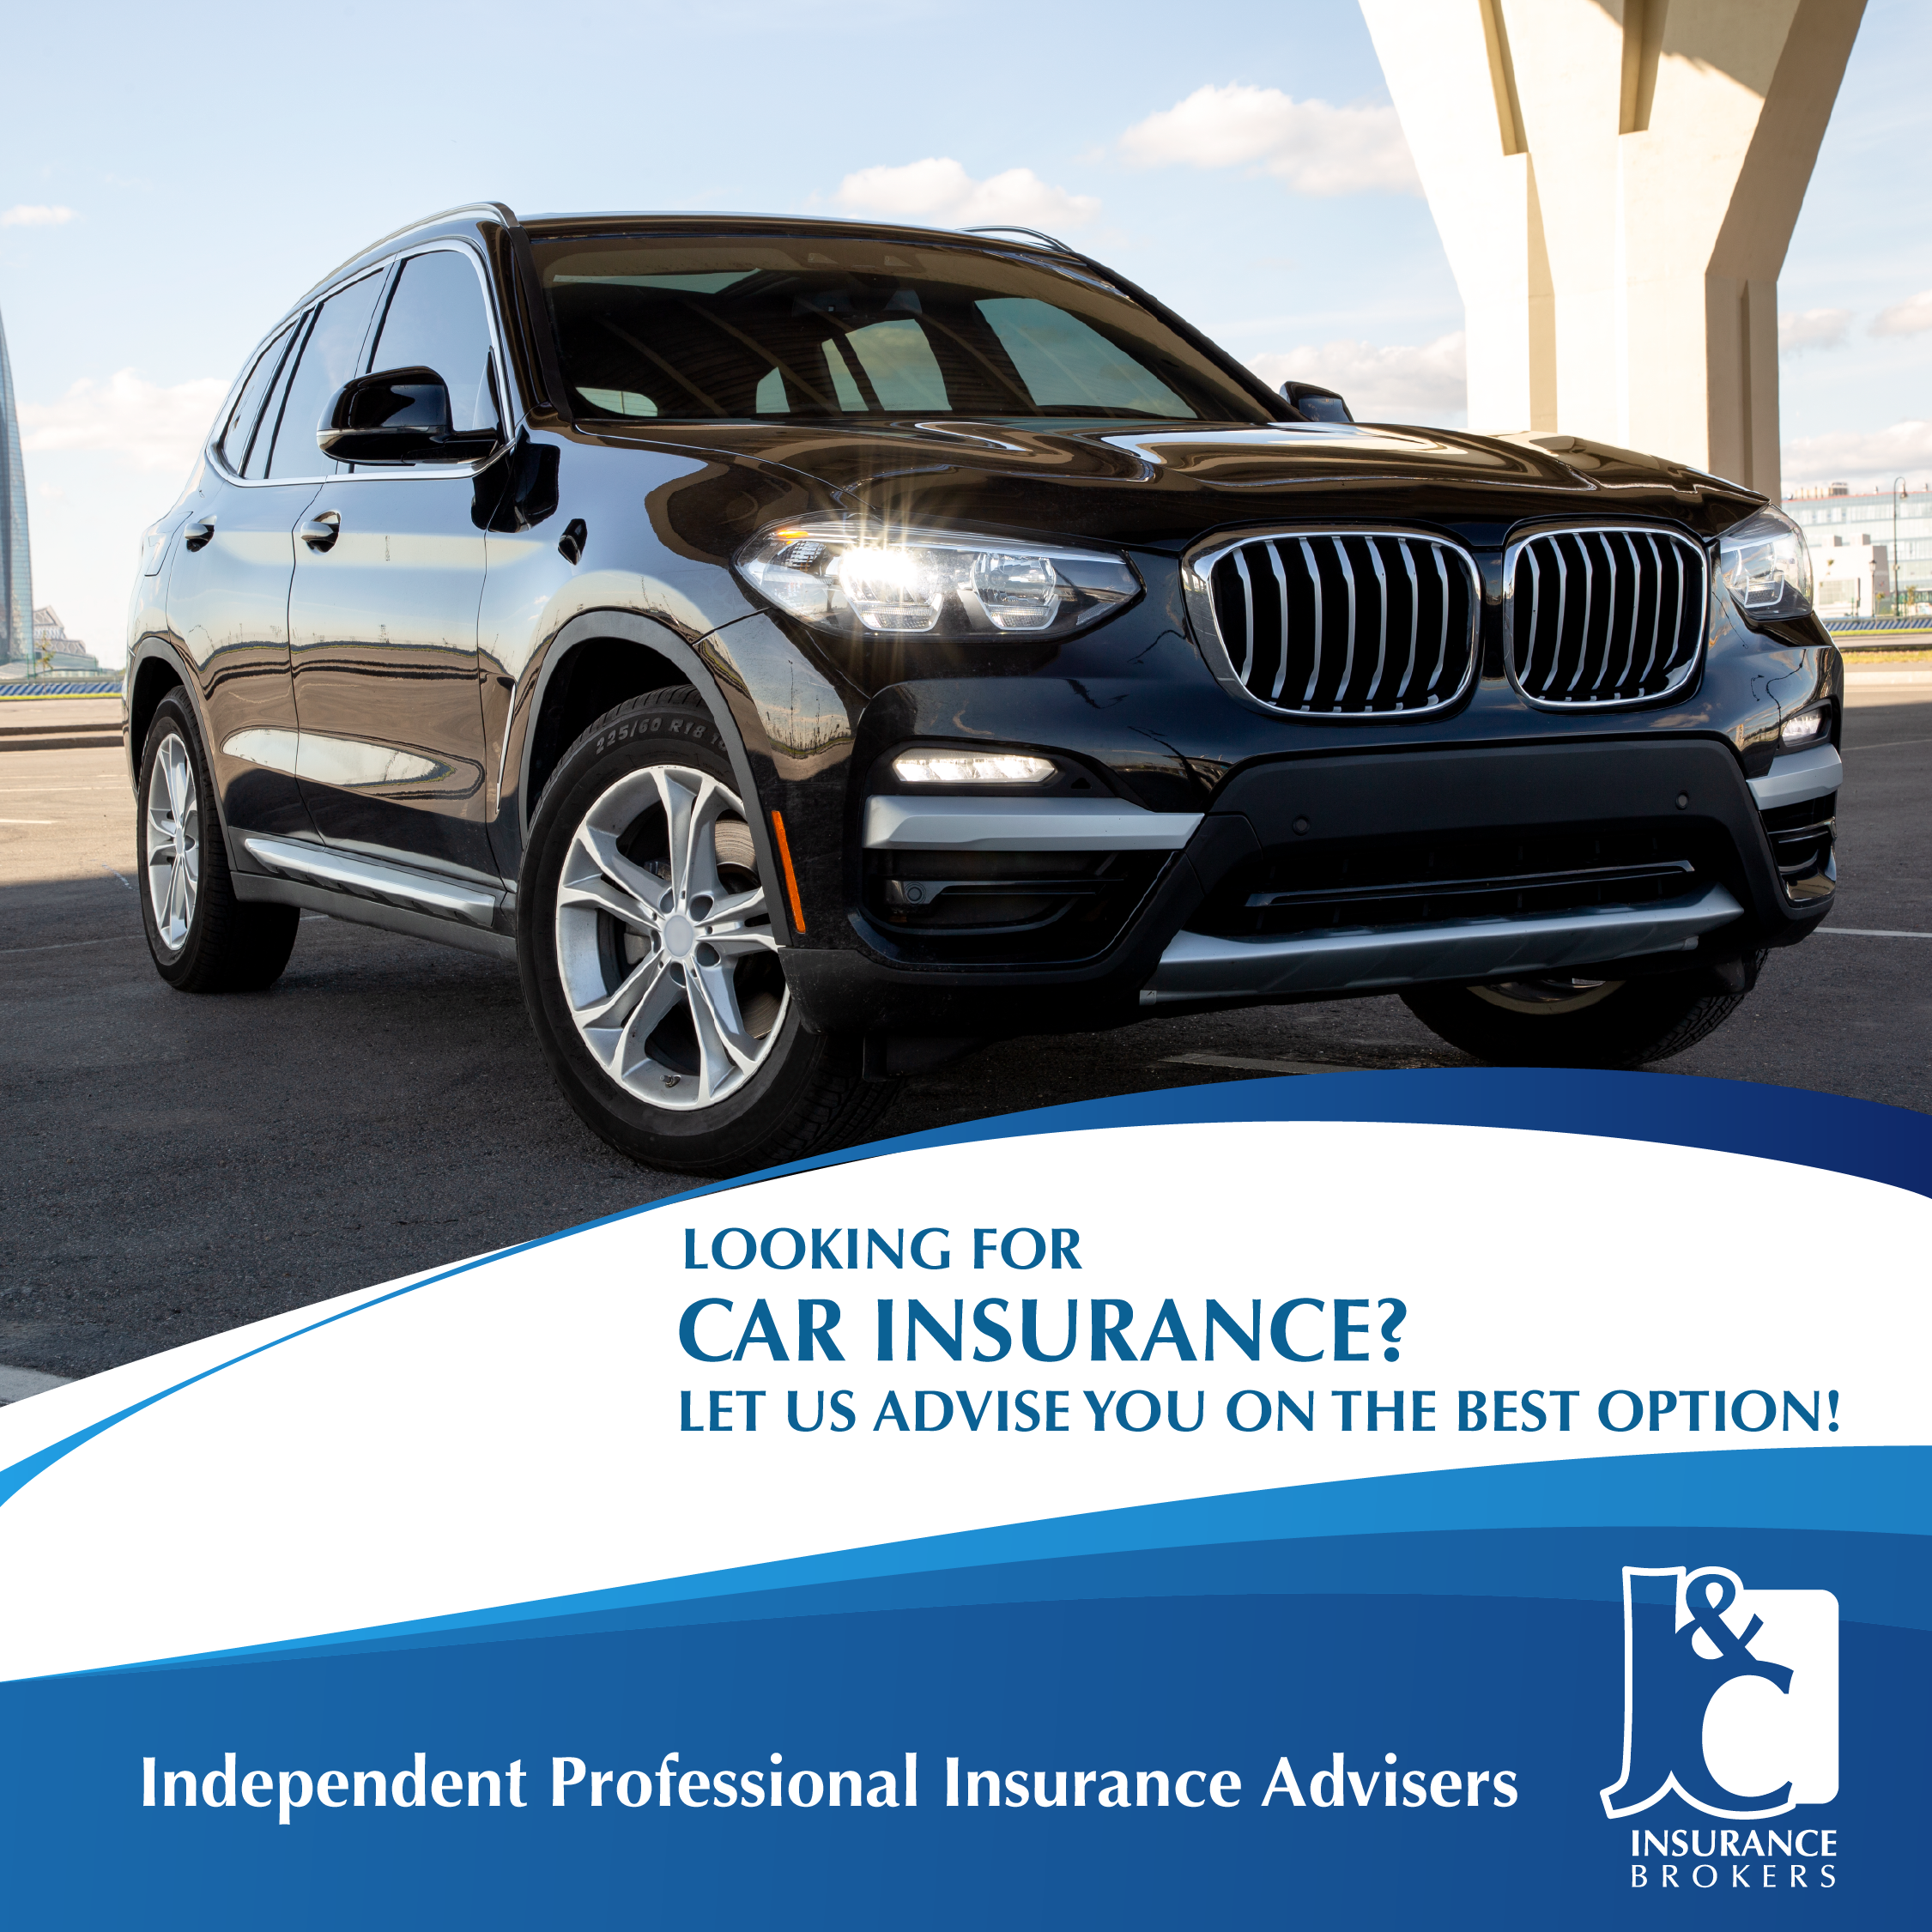 J&C Insurance Brokers - Car Insurance